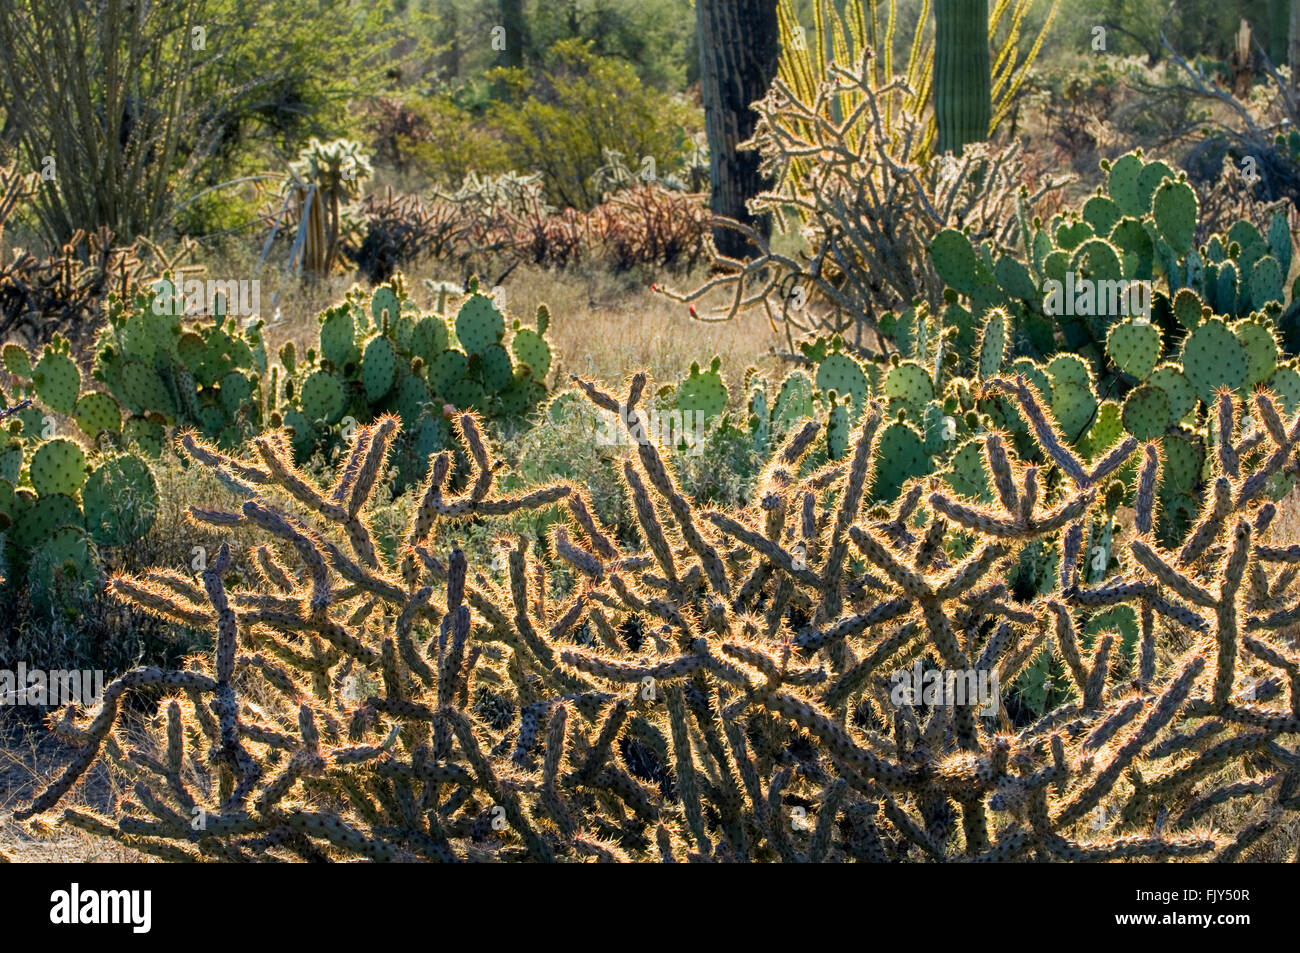 Hirschhorn Cholla (Opuntia versicolor) und Engelmann (Opuntia Engelmannii) Feigenkakteen, Sonoran Wüste, Arizona, USA Stockfoto